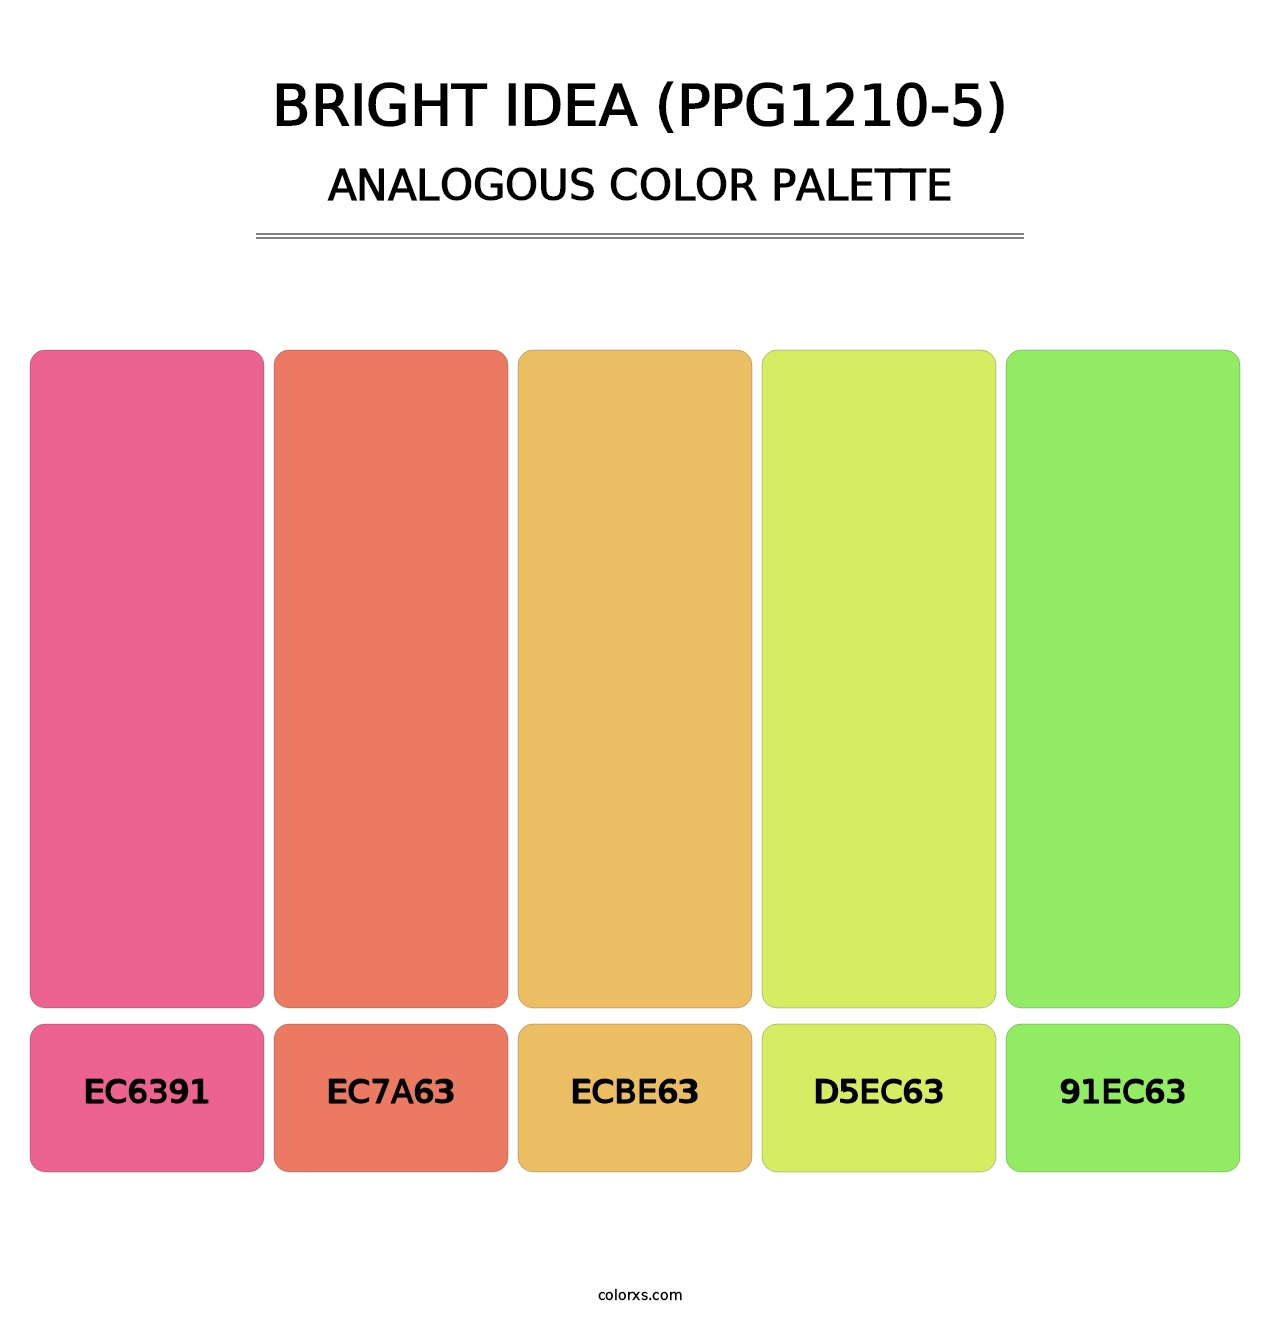 Bright Idea (PPG1210-5) - Analogous Color Palette